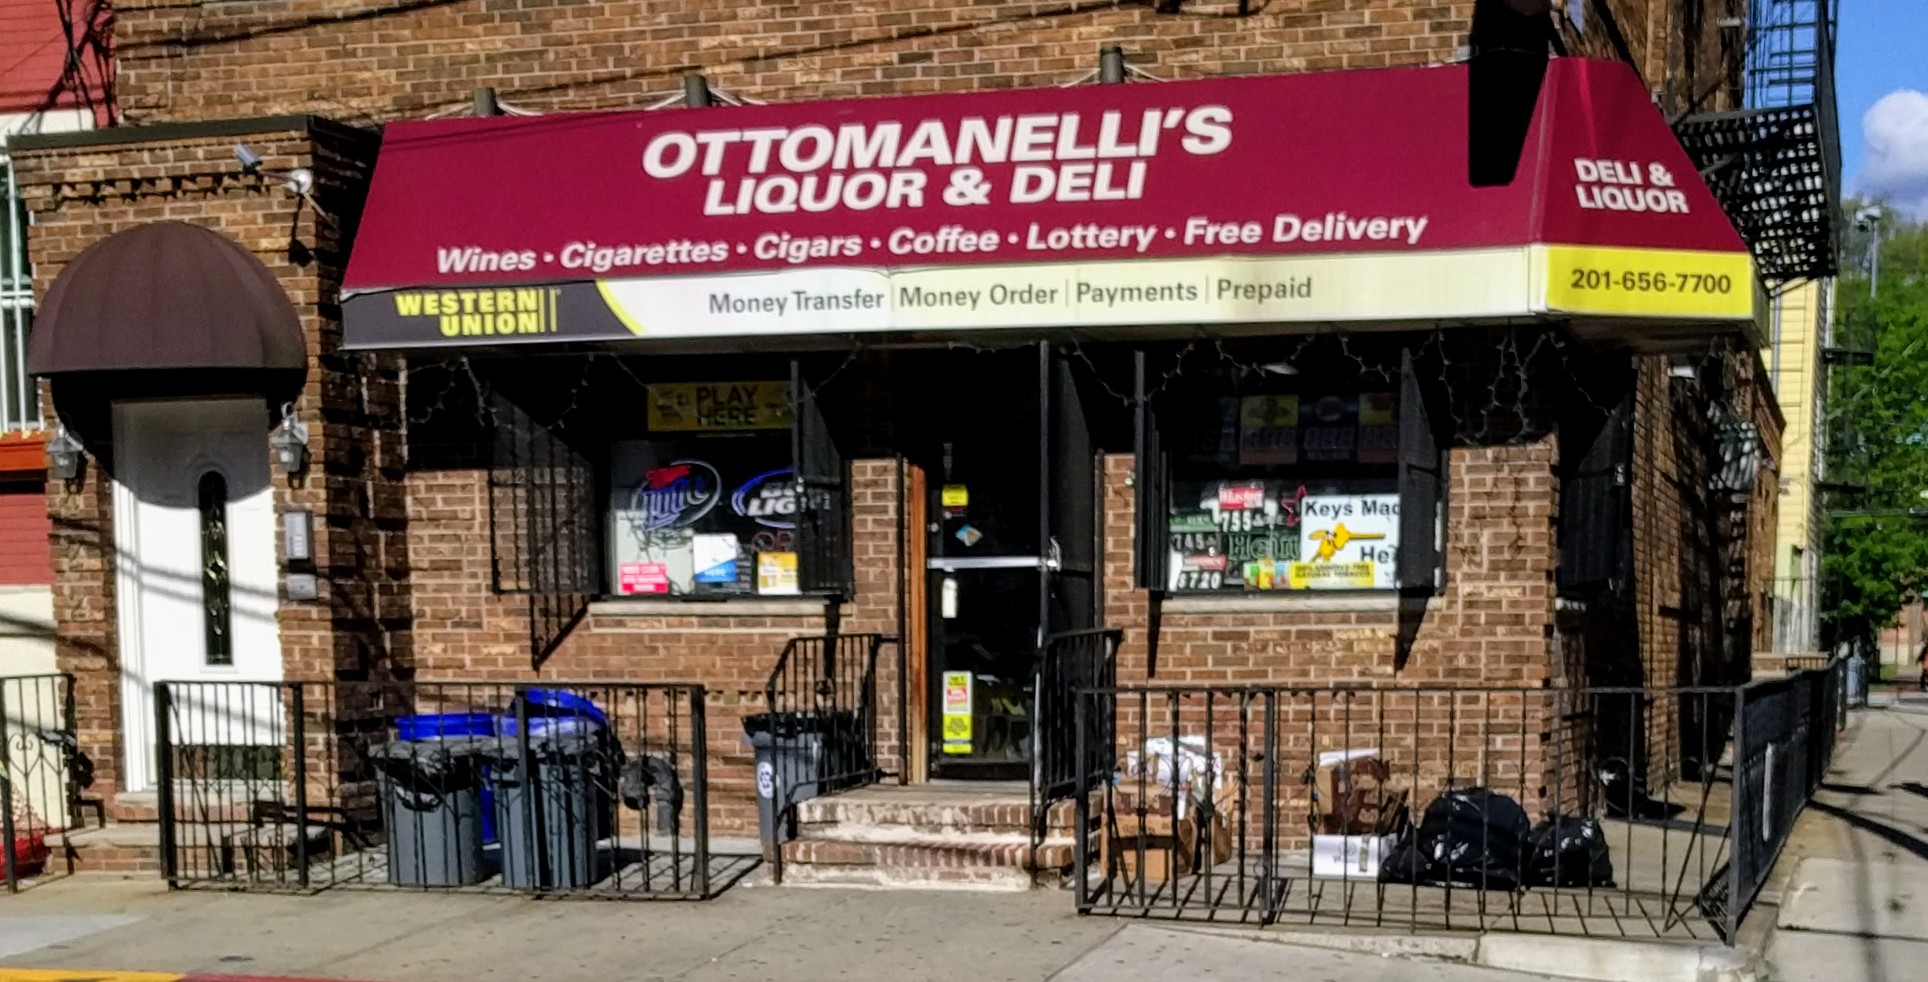 Ottomanelli's Liquor Store